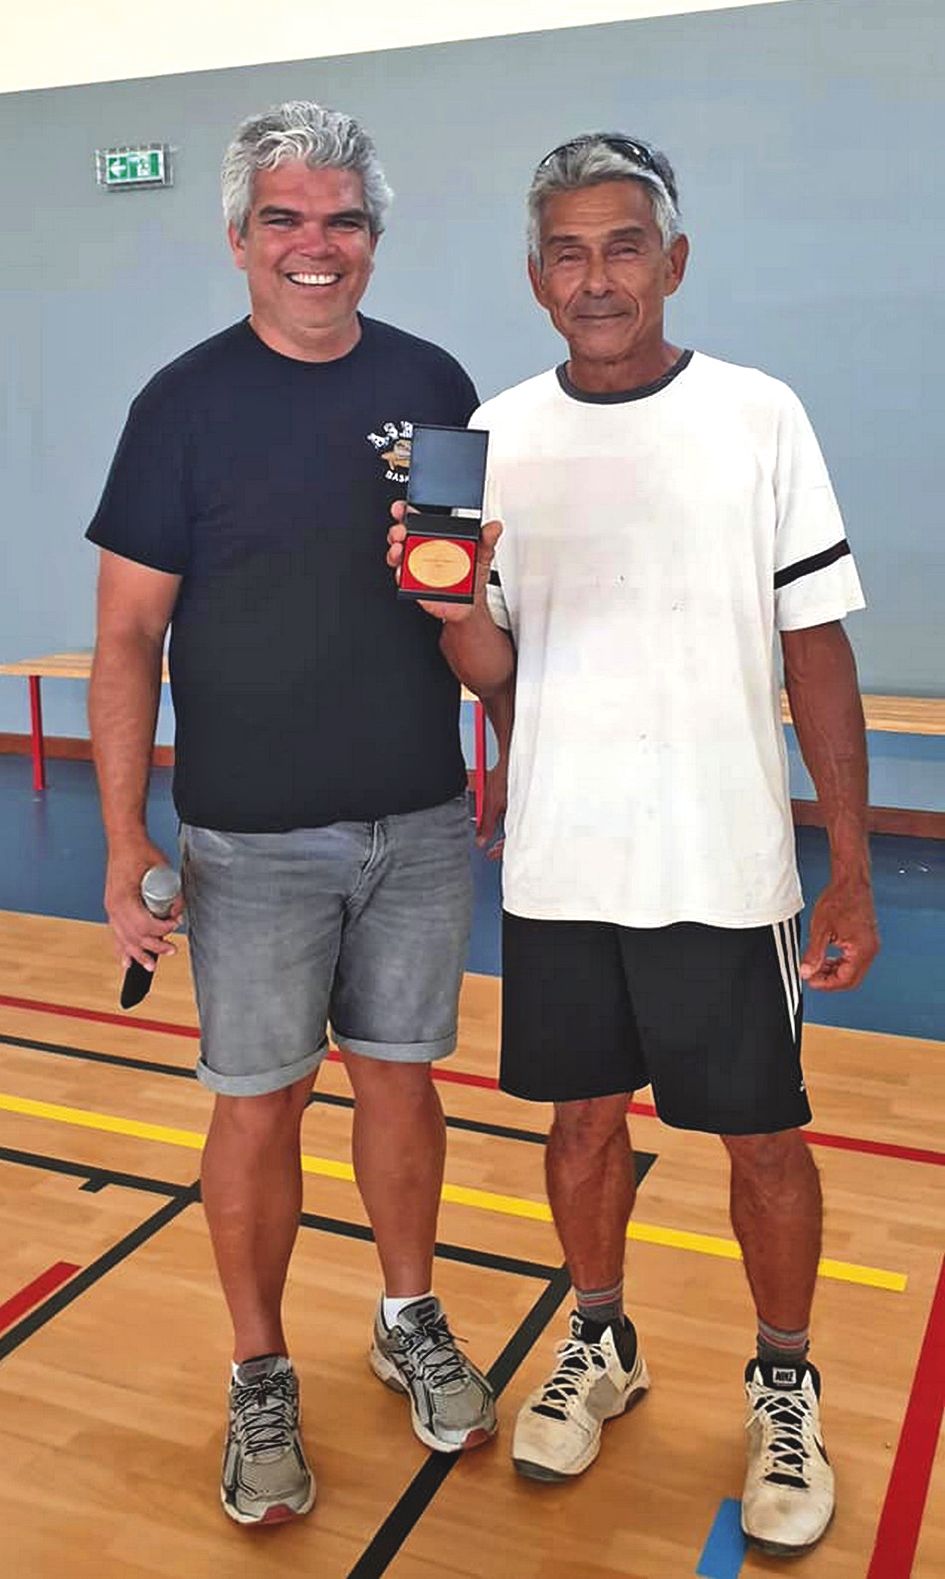 VOH. Rolland Durand, coach du Basket club Voh Koné Pouembout et champion de Calédonie dans les années 80, a été récompensé, samedi après-midi, de la médaille d’or du mérite, pour le développement du basket calédonien et ses résultats.